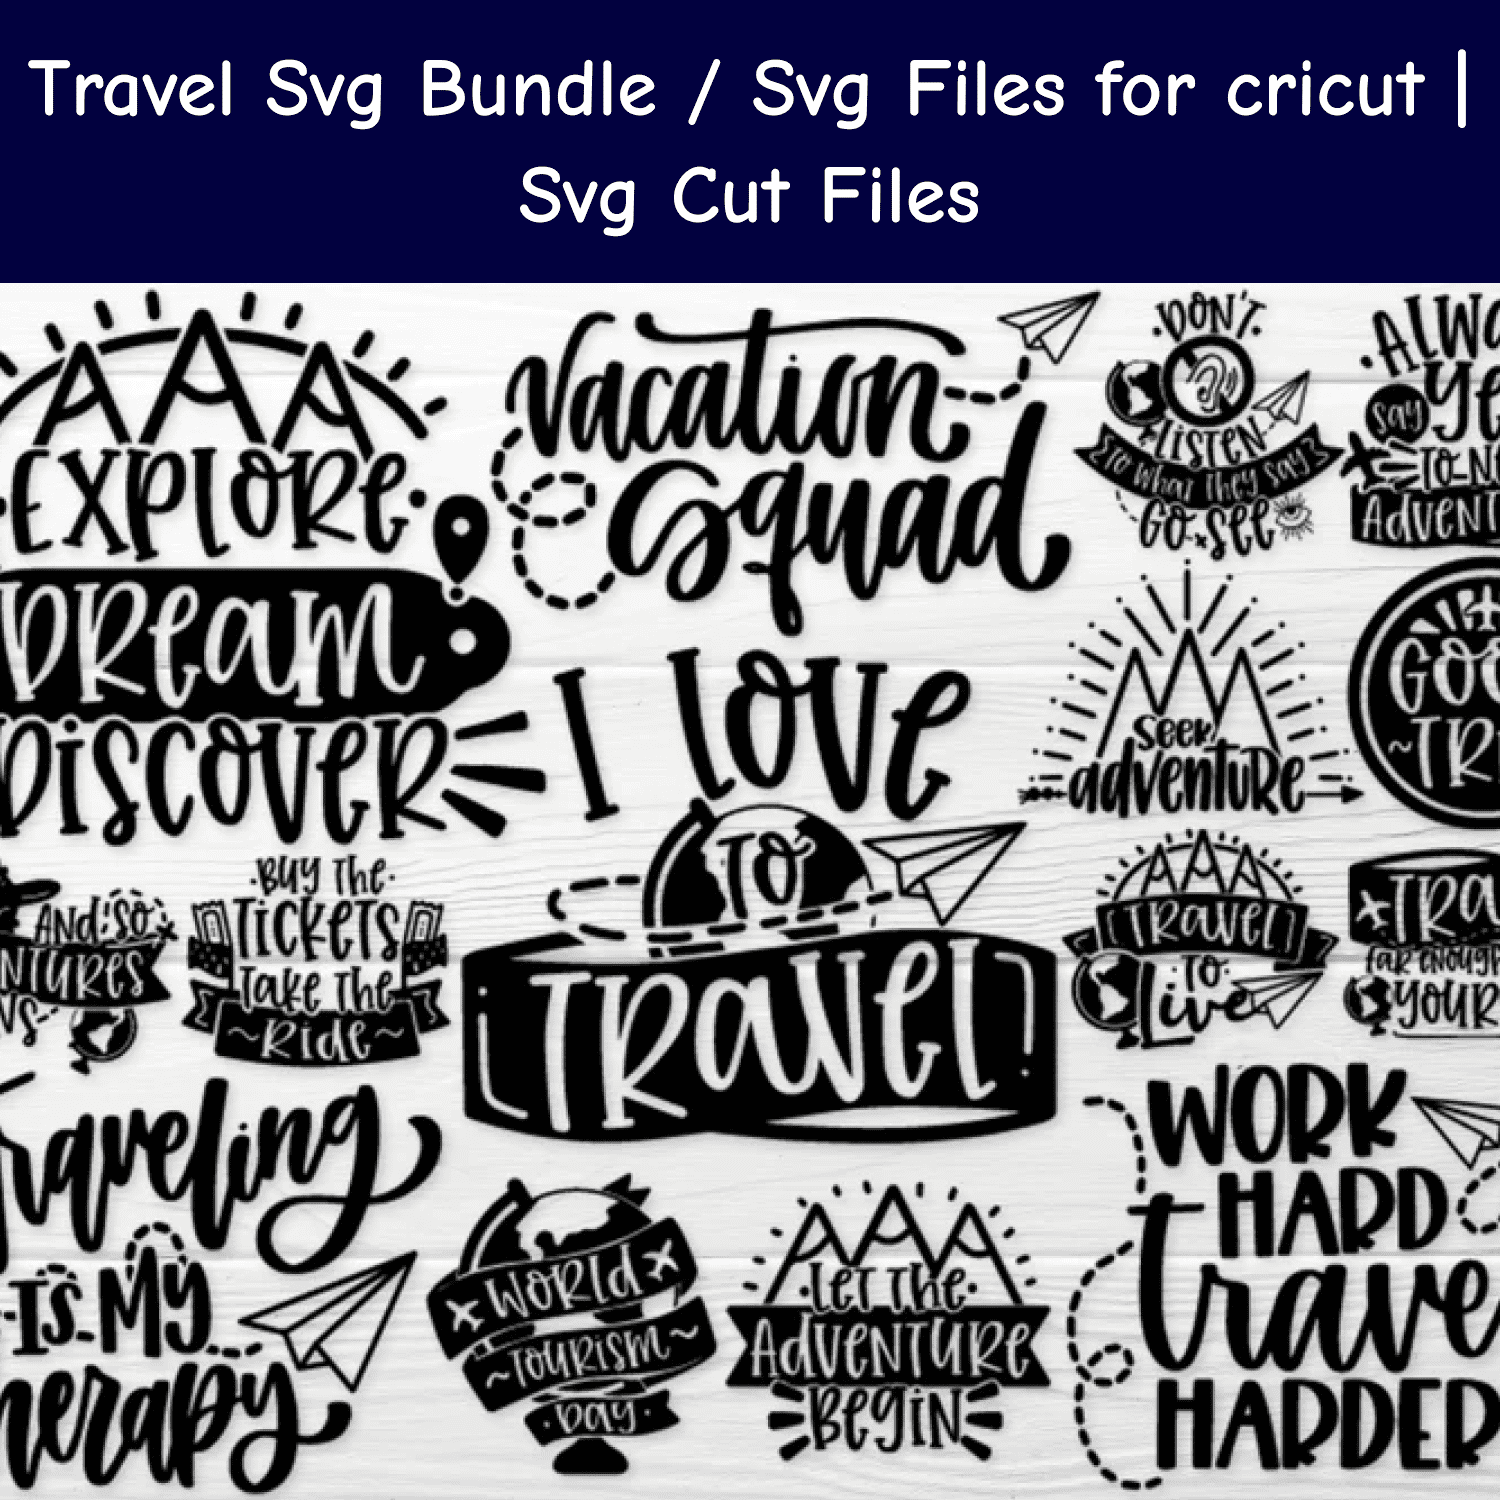 Travel Svg Bundle cover.